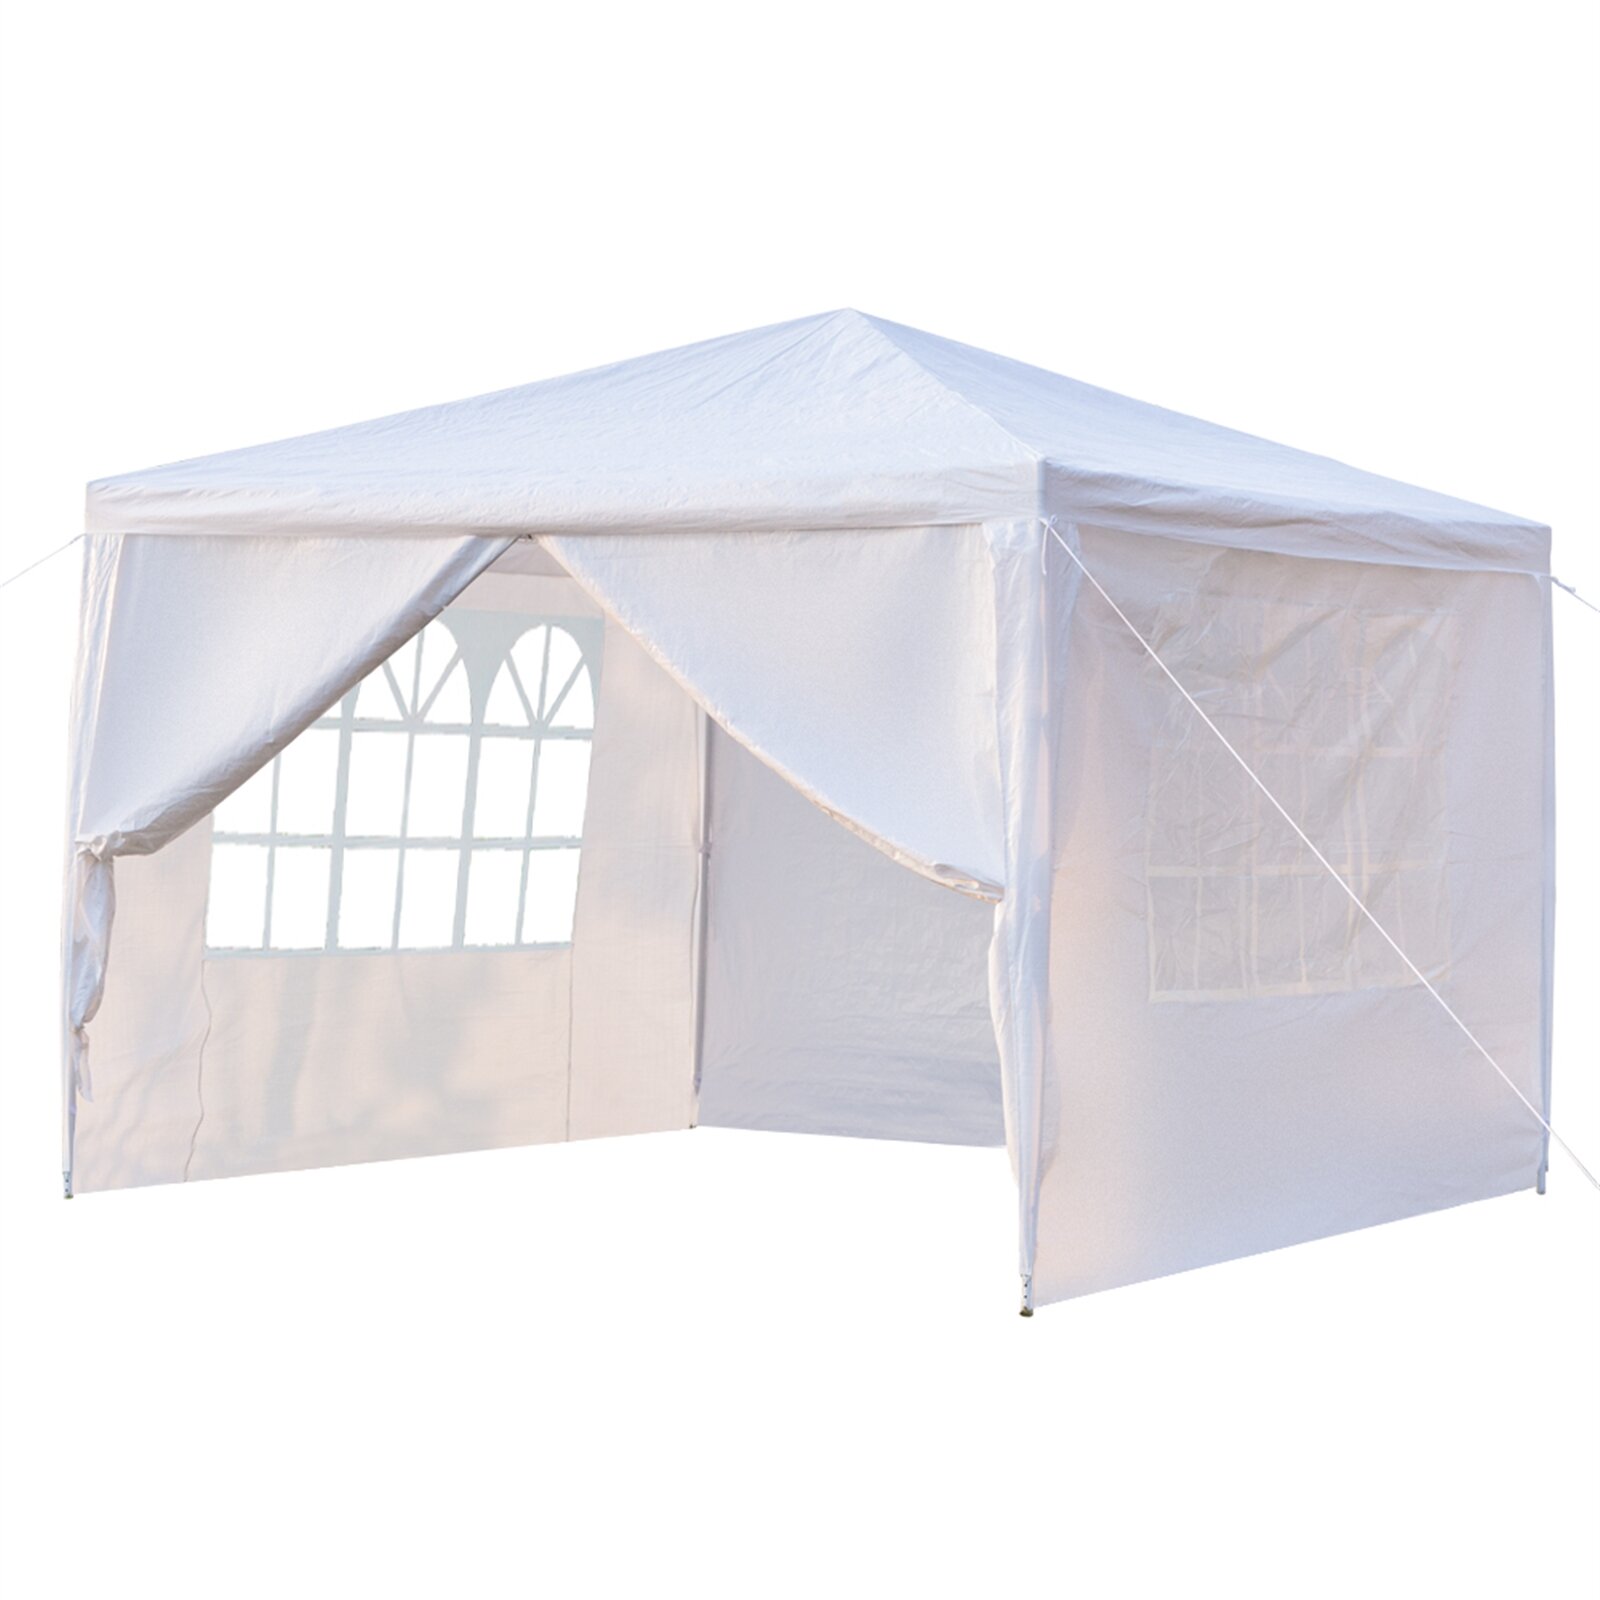 [US/UK/FR Direct] Camping Survivals 3 x 3m Cuatro lados Parasol Refugio Portátil Doble puerta Uso doméstico Impermeable Tienda de campaña con Espiral Tubos Blanco